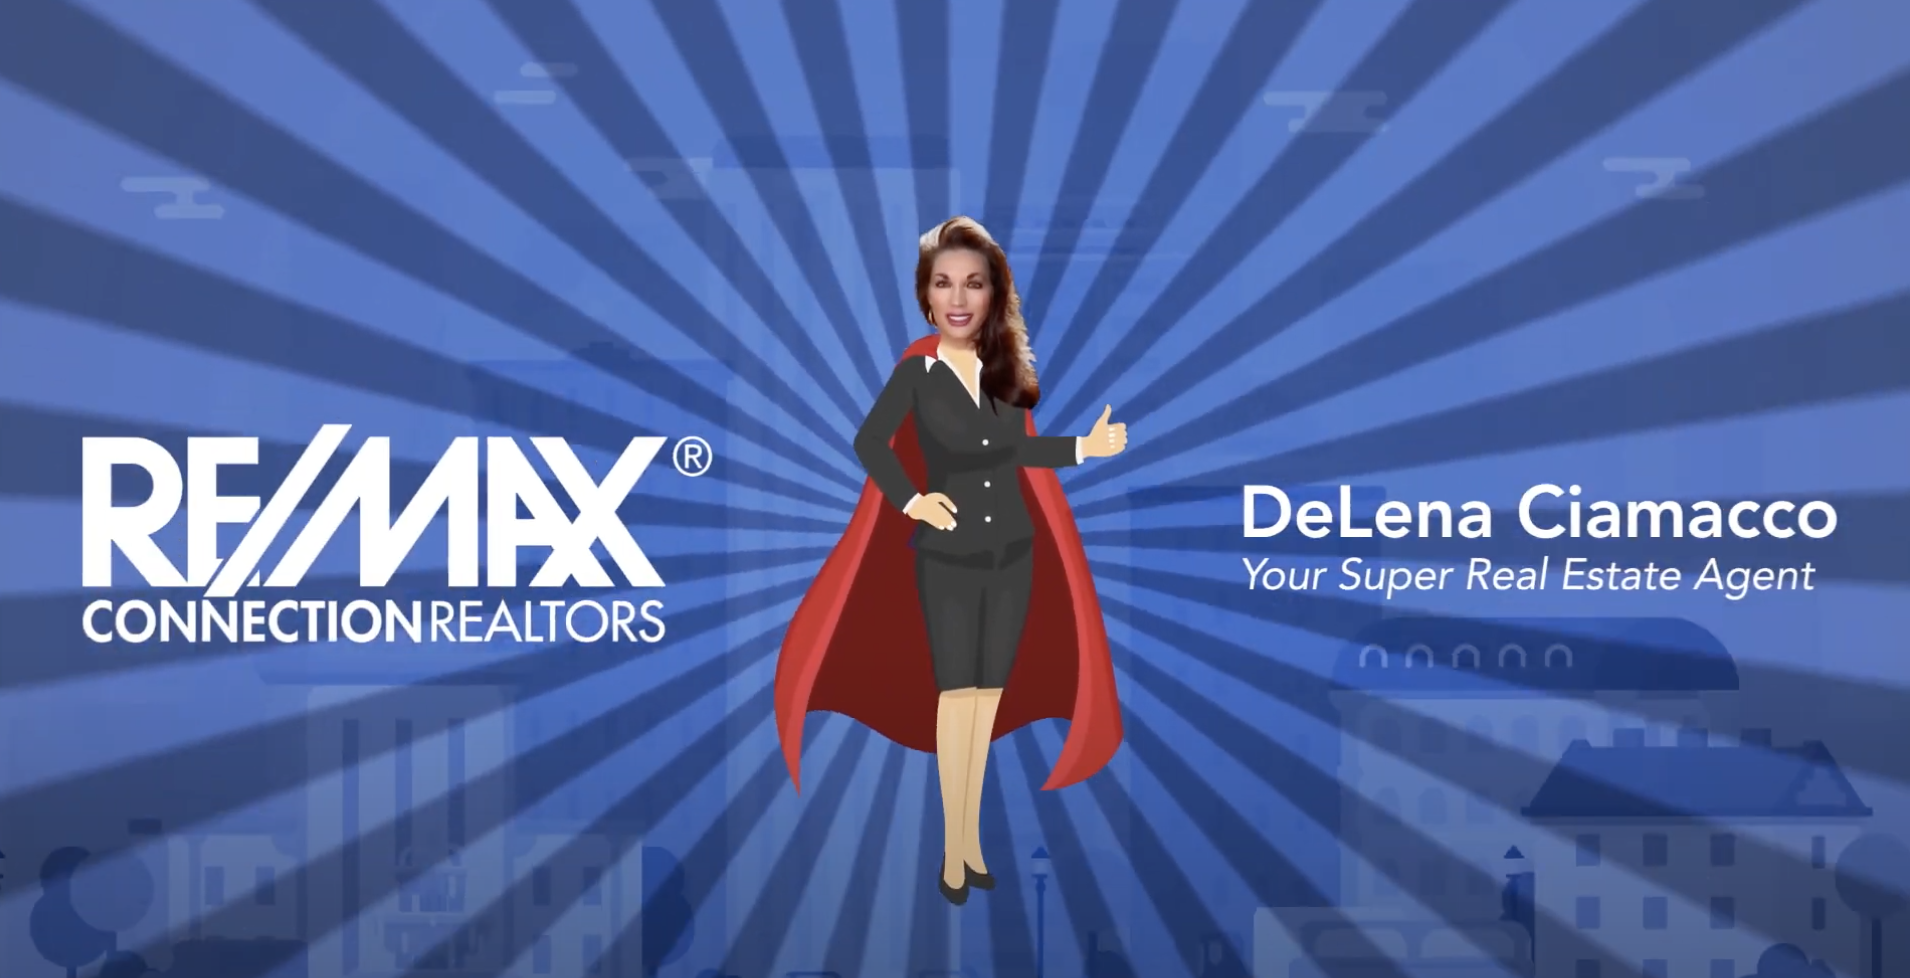 Super Real Estate Agent Real Estate Updates With Delena Ciamacco